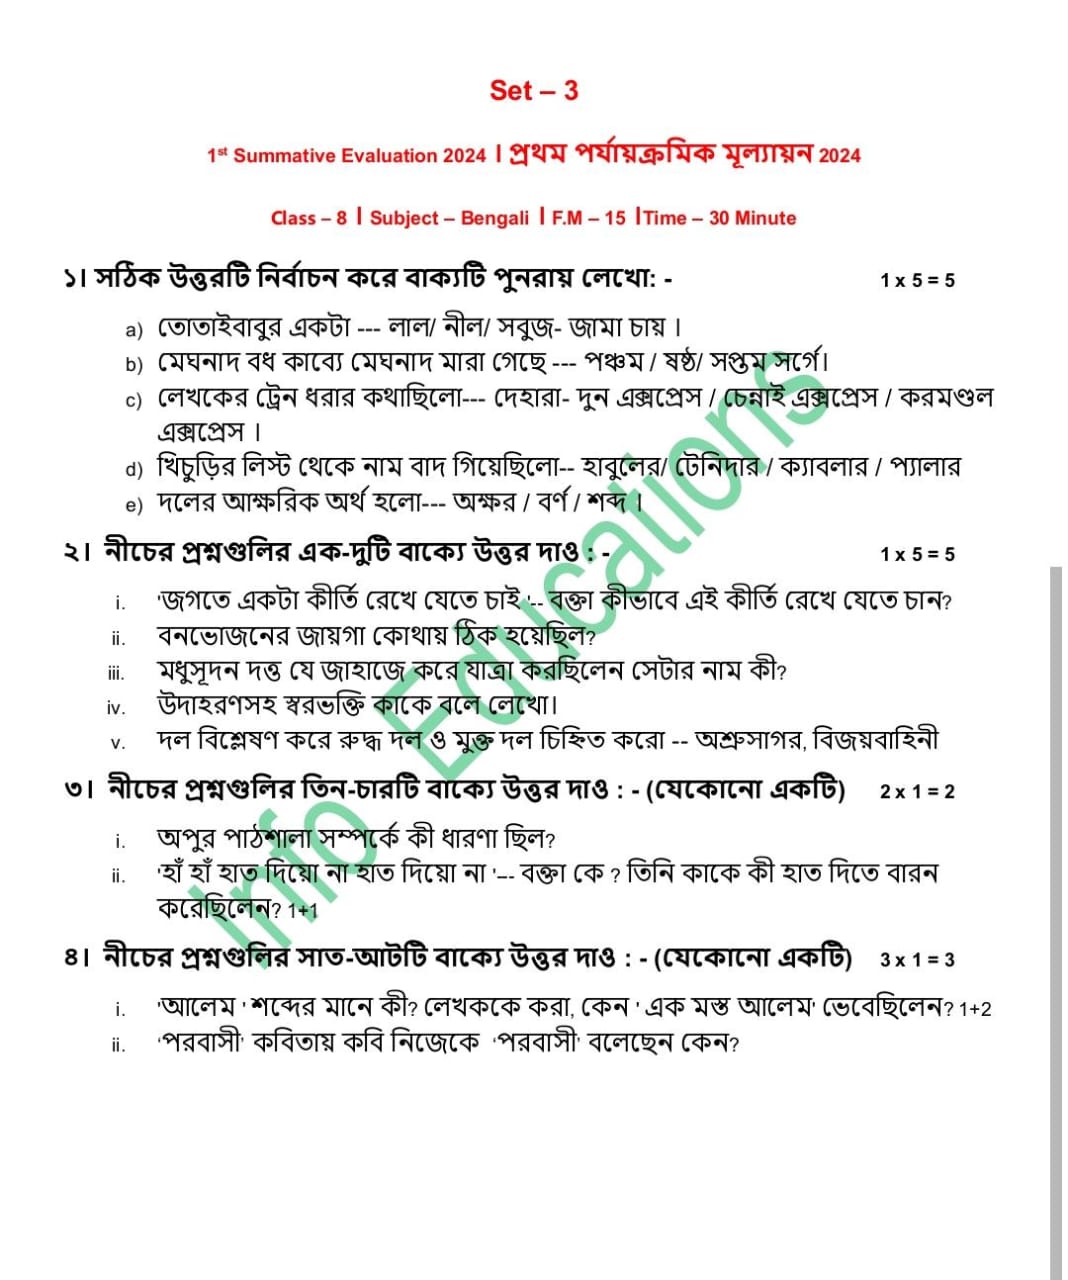 অষ্টম শ্রেণীর বাংলা প্রথম পর্যায়ক্রমিক মূল্যায়ন ২০২৪ মডেল প্রশ্নপত্র । Class 8 Bengali Suggestions 2024